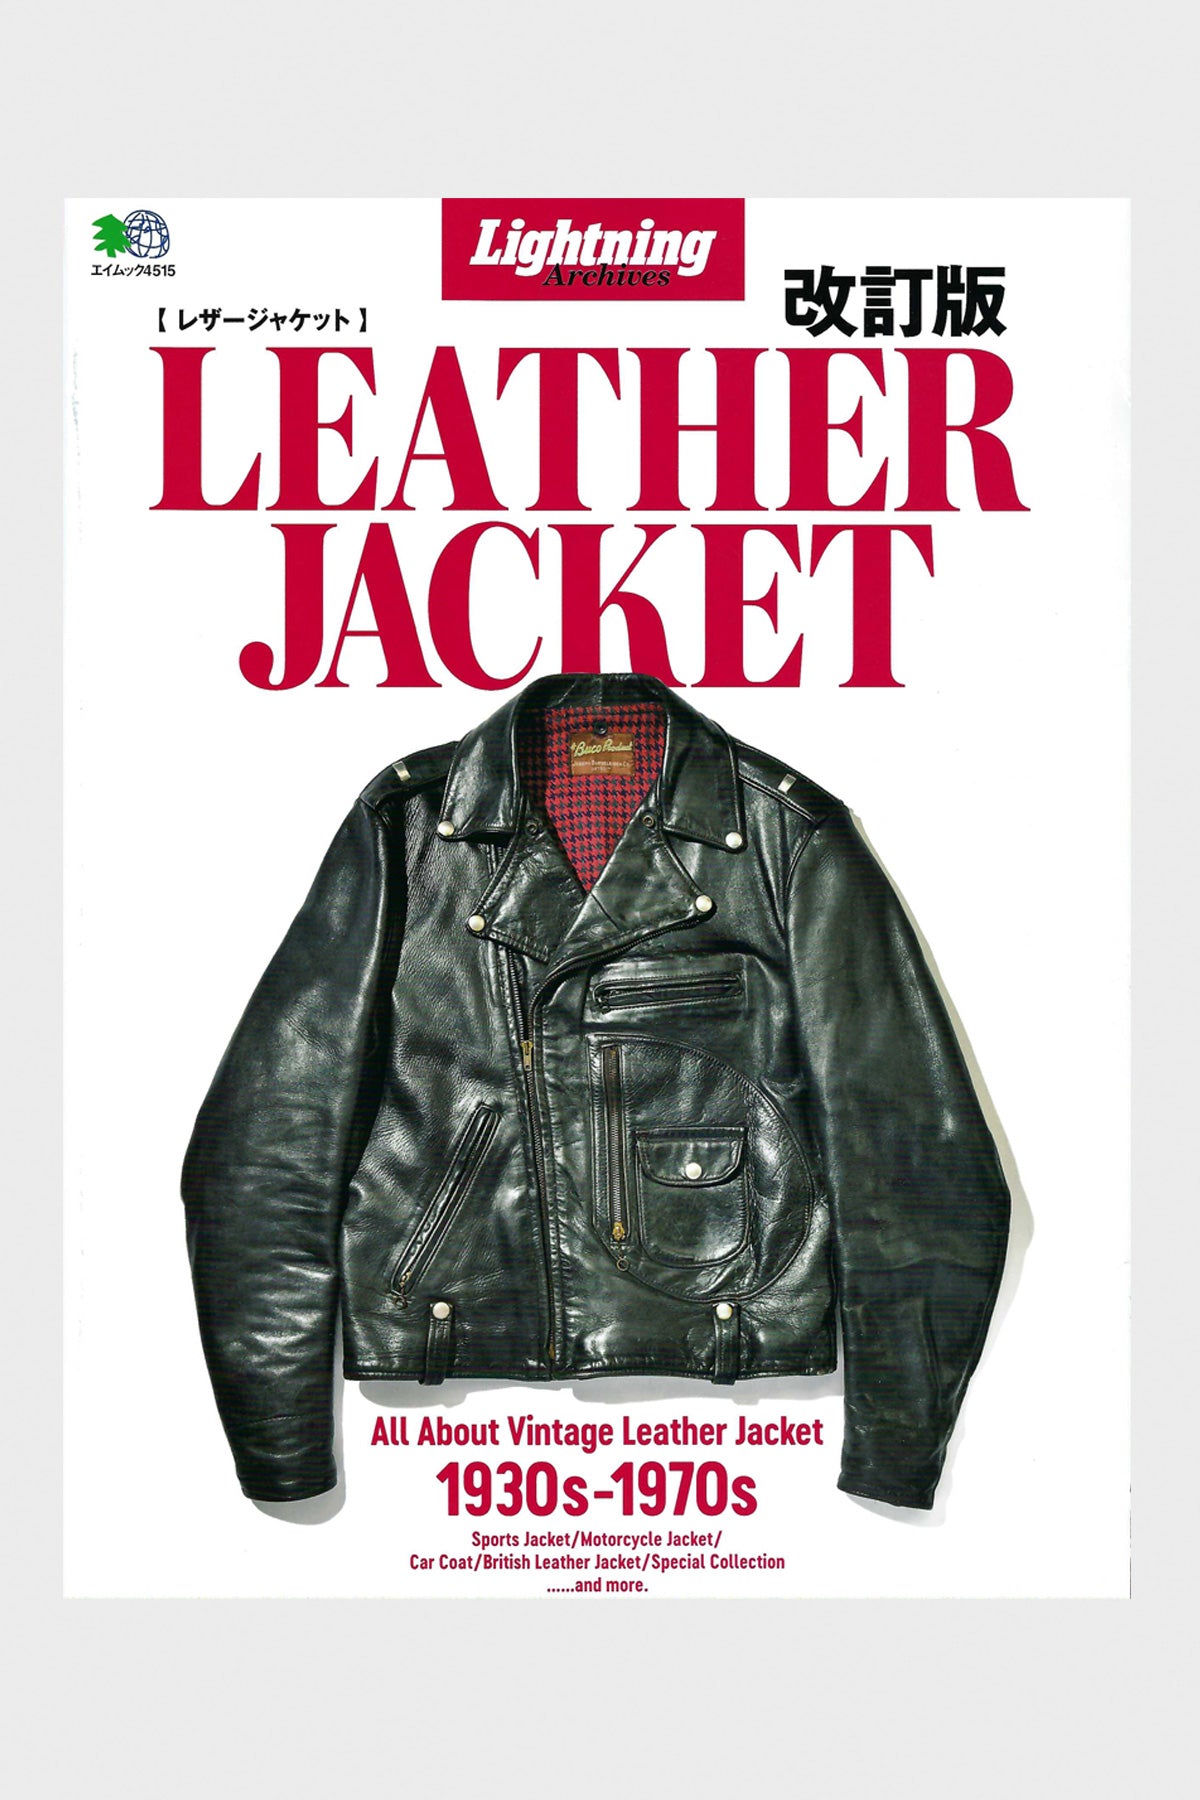 Lightning Clutch Vintage Leather Jacket Updated Magazine | Canoe Club